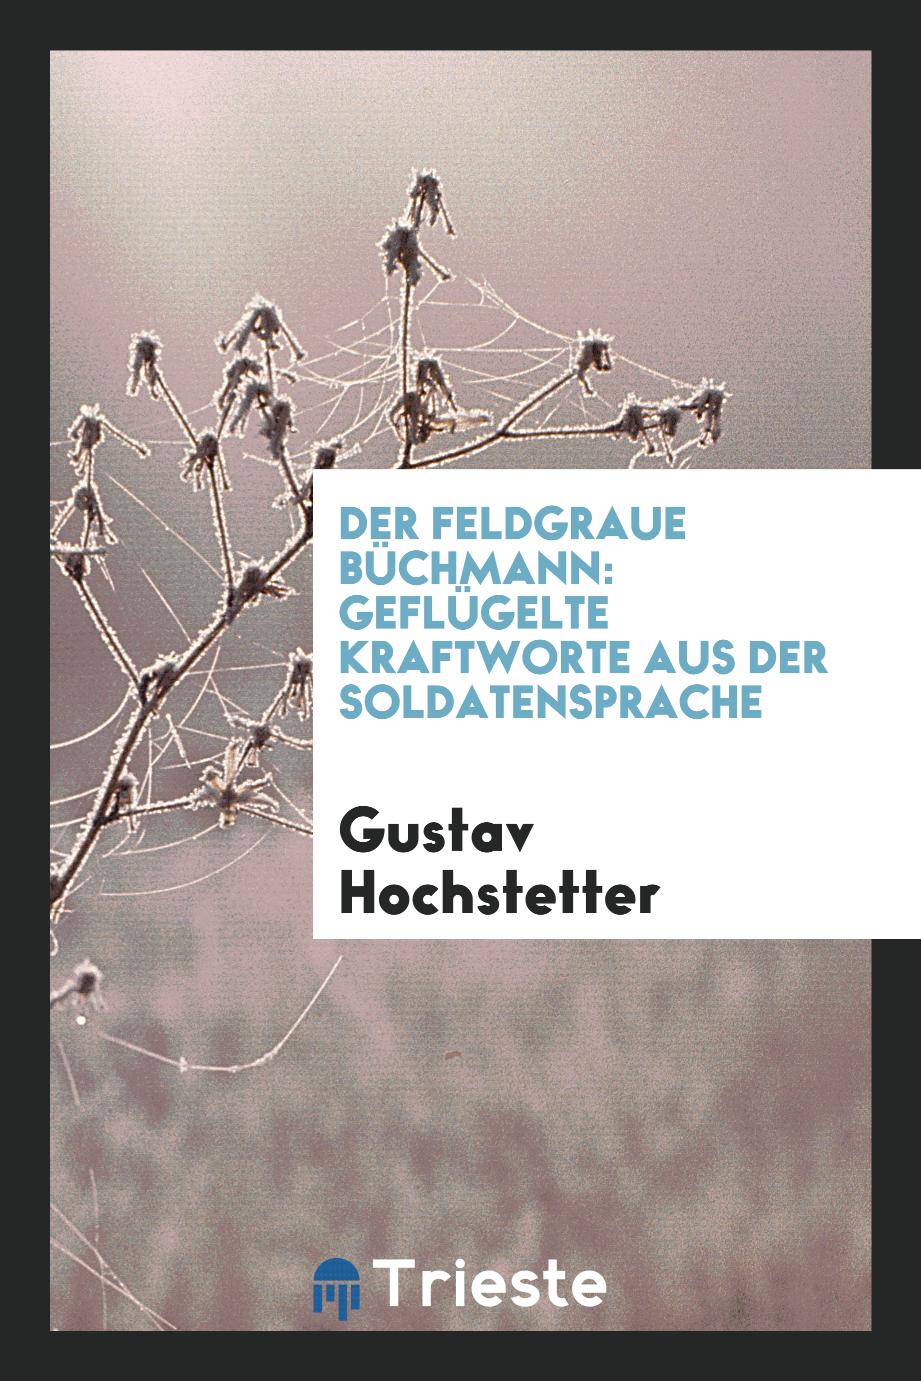 Gustav Hochstetter - Der Feldgraue Büchmann: Geflügelte Kraftworte aus der Soldatensprache